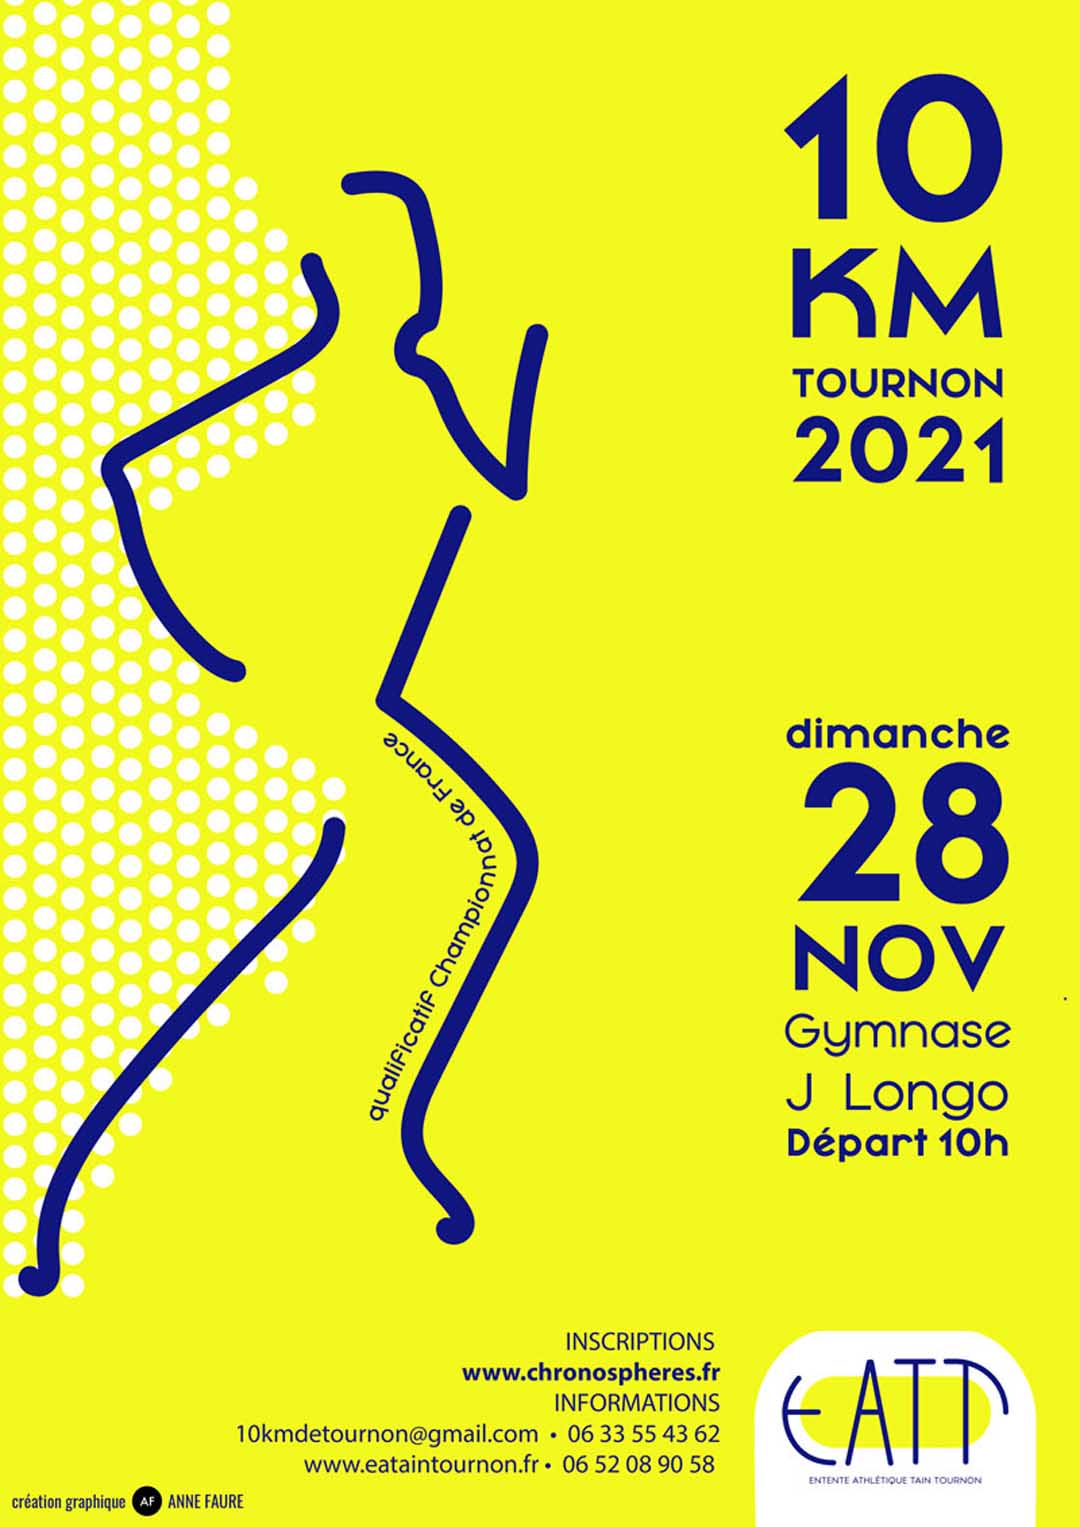 LES 10 KMS DE TOURNON. Organisés par l'EATT. Dimanche 29 novembre 2021